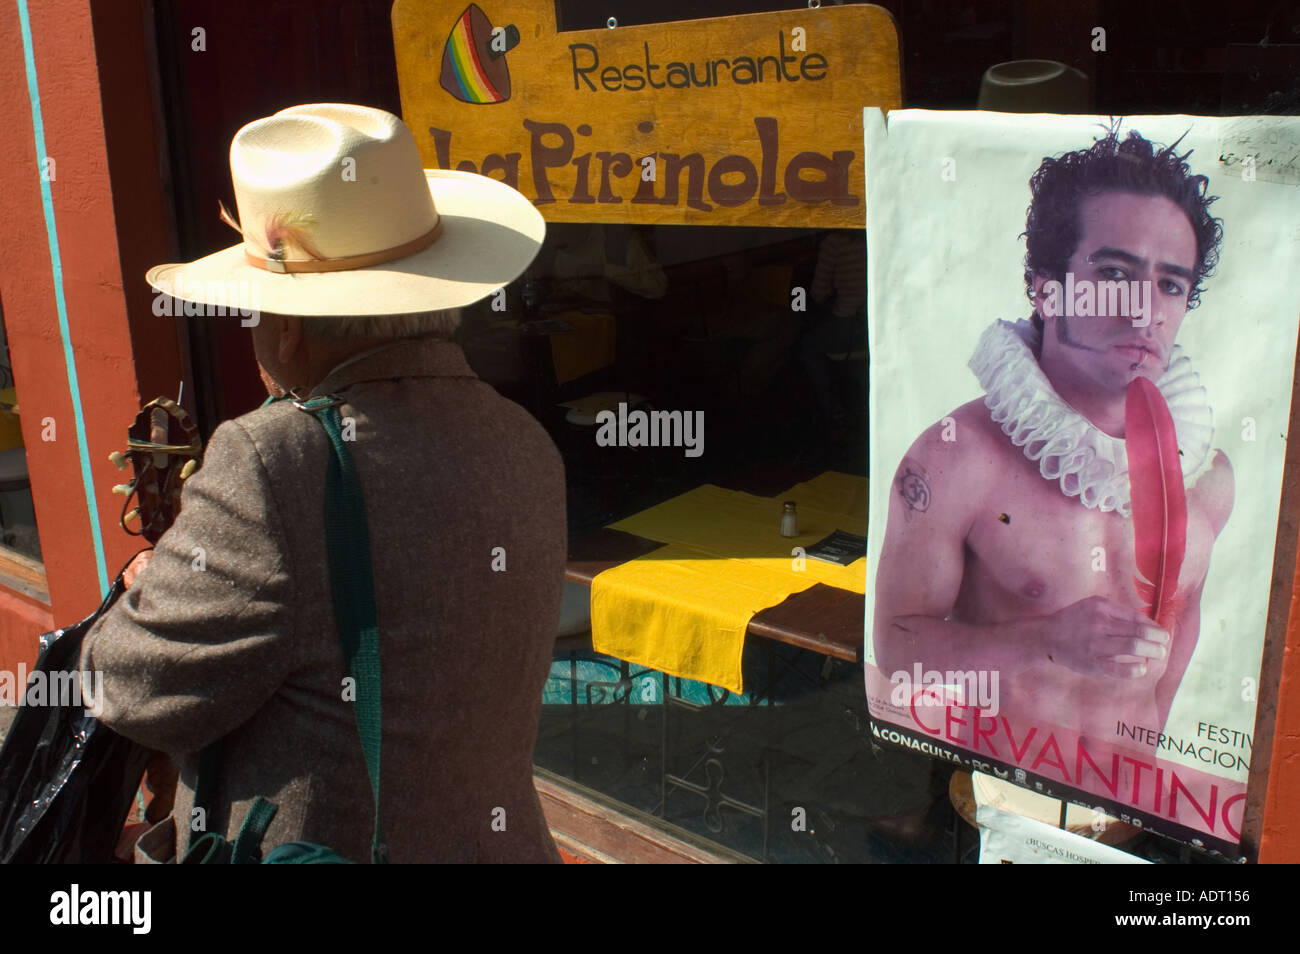 Street scene during the Cervantino arts festival in Guanajuato Mexico Stock Photo